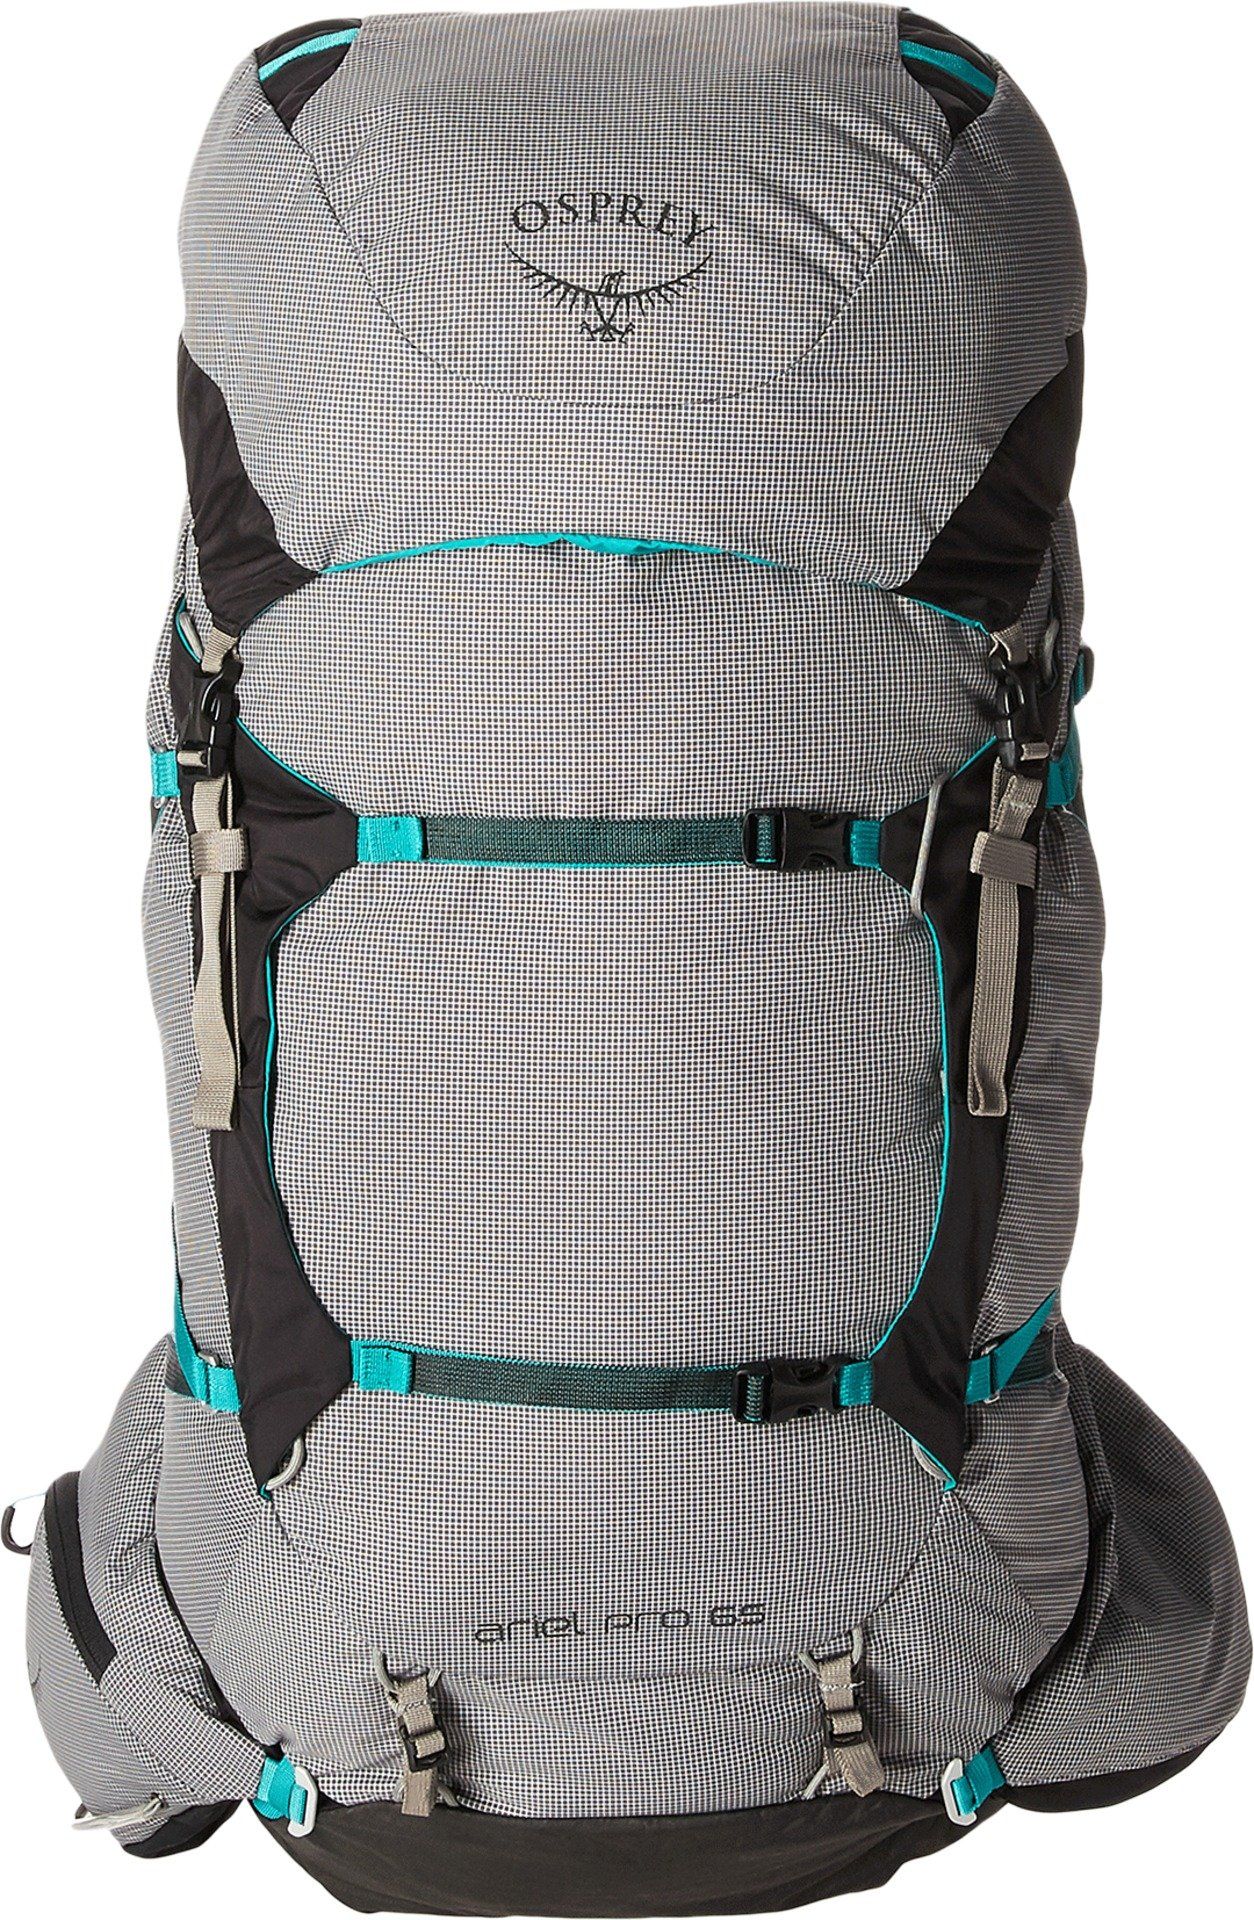 Osprey Packs Rook/Renn Backpacking Backpack vs Osprey Ariel Pro 65  Backpacking Backpack - Slant